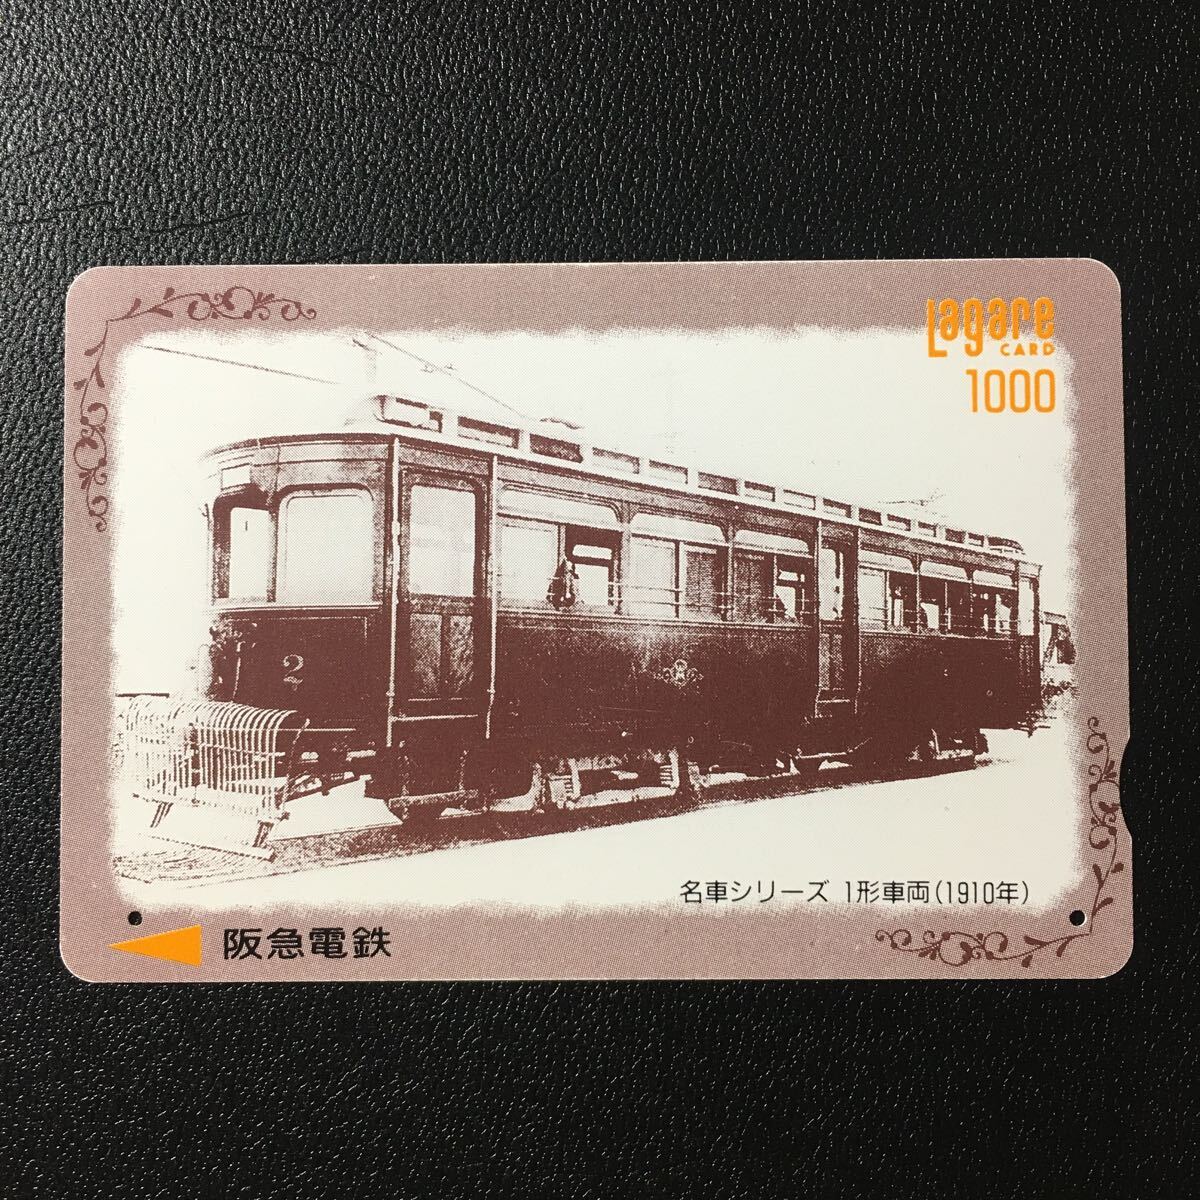 1993年8月15日発売柄ー名車シリーズ「1形車両(1910年)」ー阪急ラガールカード(使用済スルッとKANSAI)_画像1